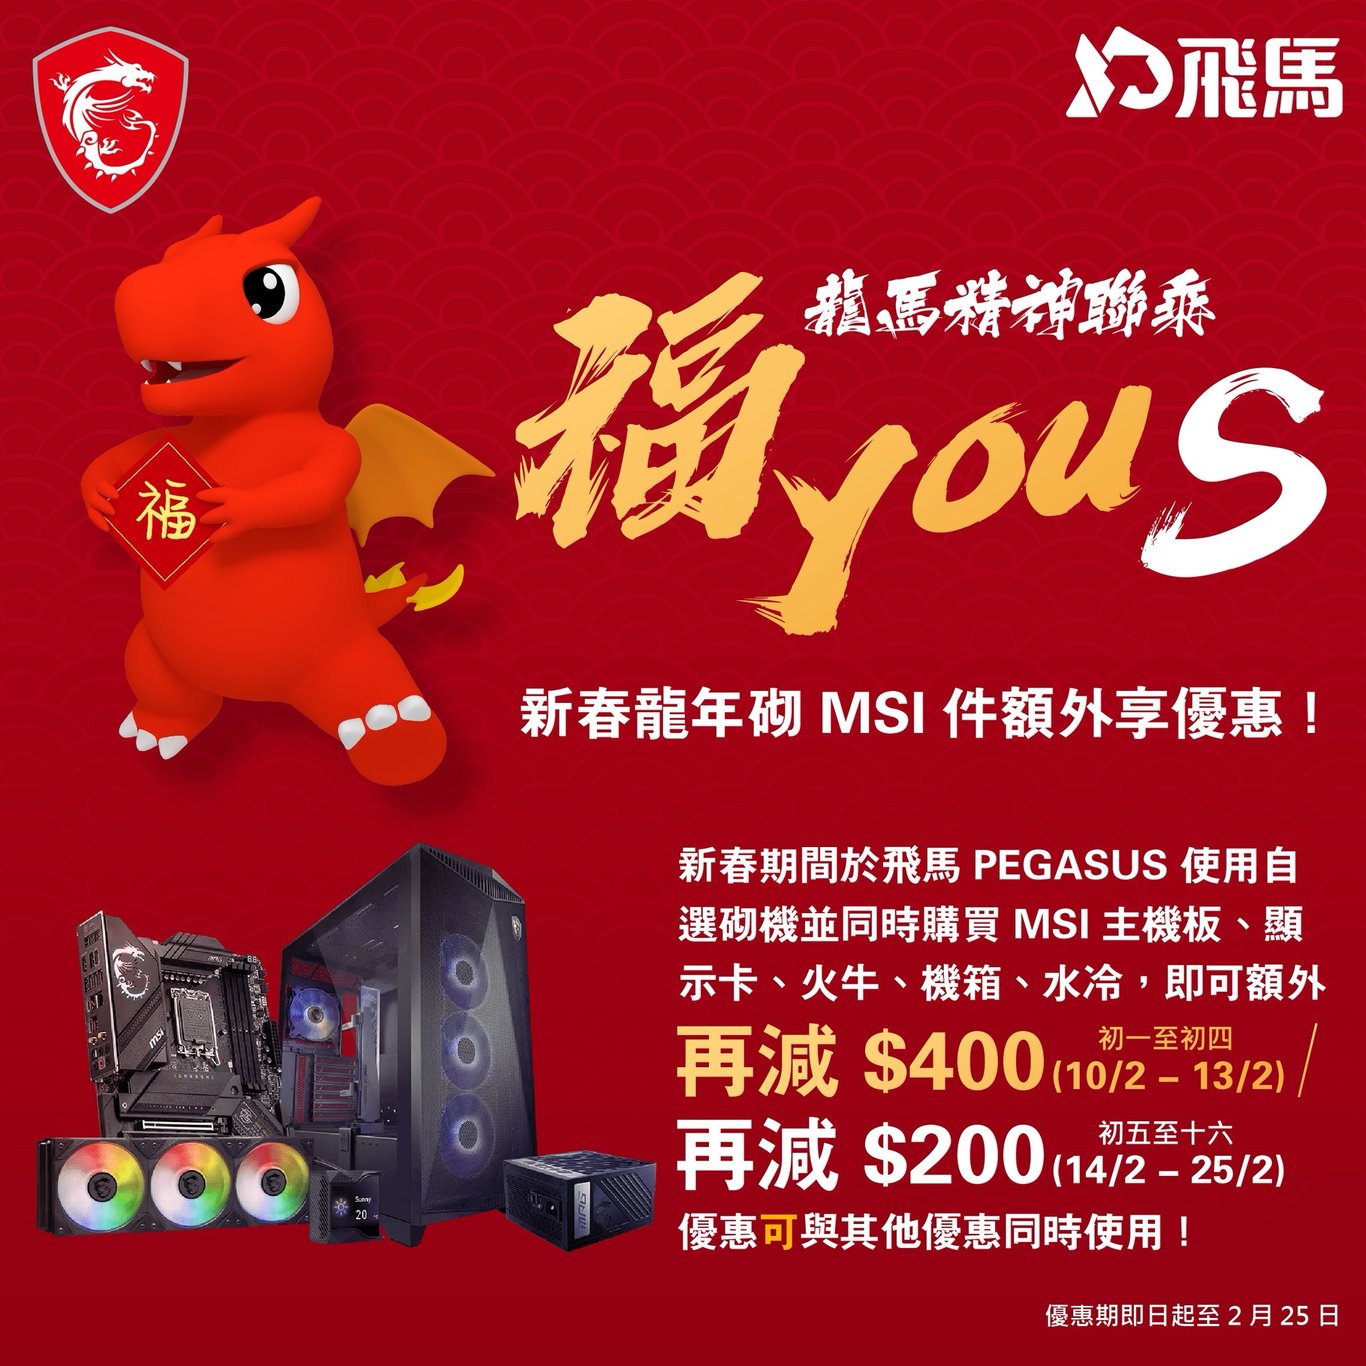 新春龍年 MSI 「福 YOU S」5 件 MSI 硬件 - $200 優惠